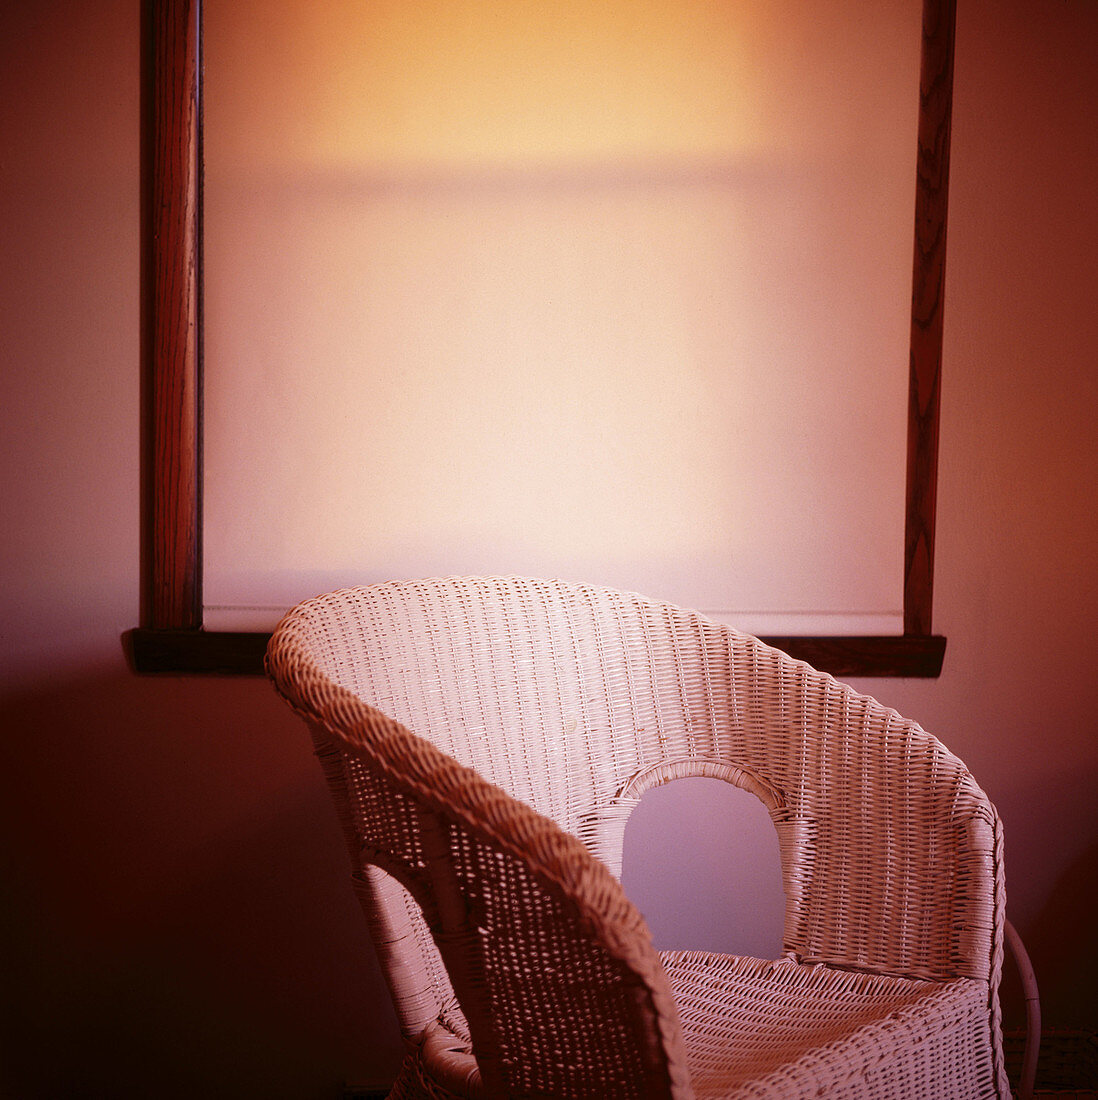 Wicker chair by window